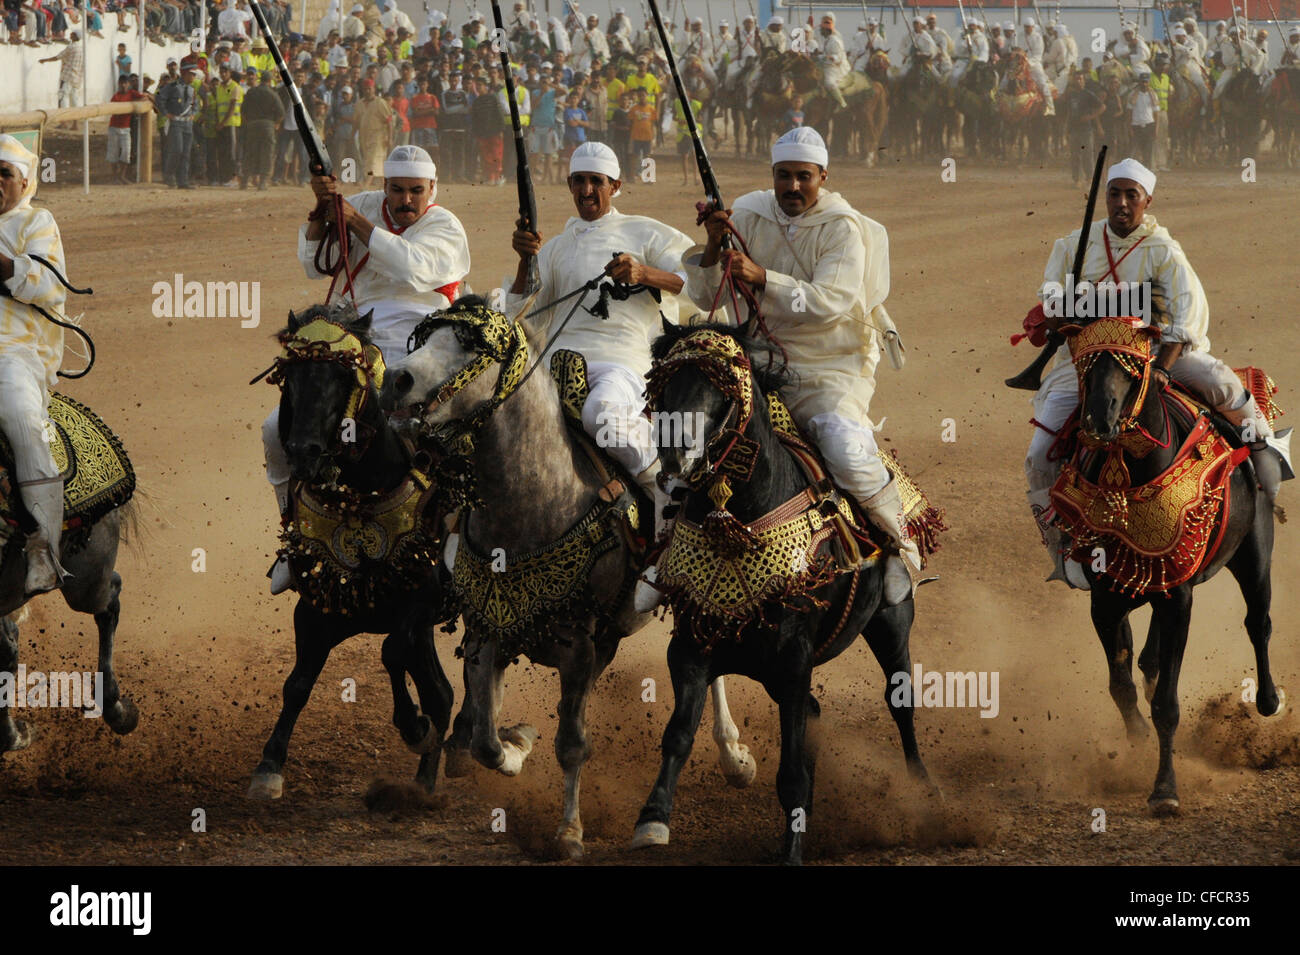 Hommes à cheval armés de fusils, fantasia festival pour le Moussem de Moulay Abdallah, près d'el-Jadida, Côte Atlantique, Maroc, Af Banque D'Images